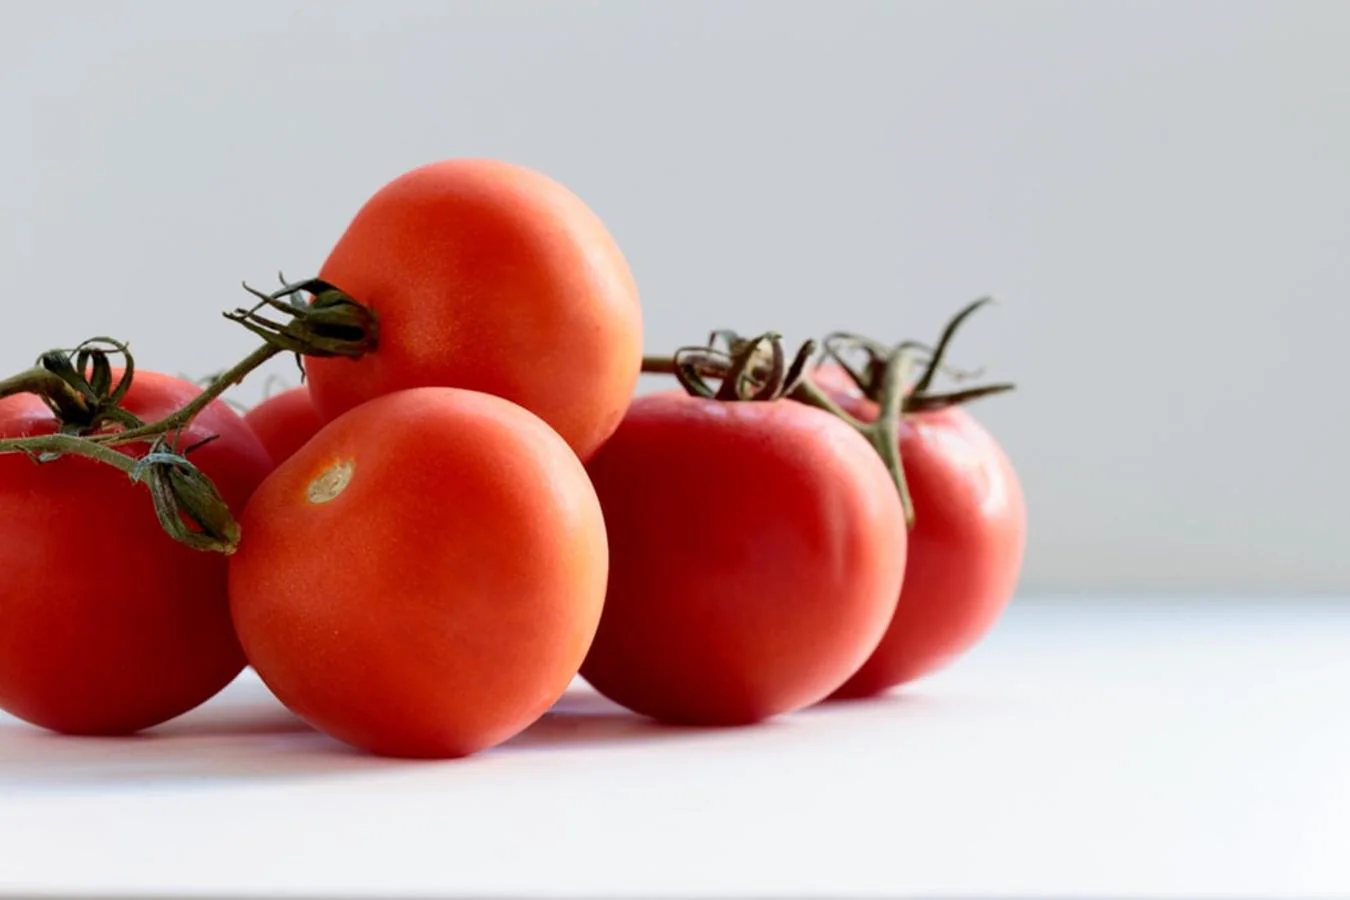 Tomate. Fátima Japón aconseja este vegetal durante todo el año, pero especialmente en verano, cuando puede incluirse en gazpachos. Los <a href="https://www.abc.es/bienestar/alimentacion/abci-tomate-202002121421_noticia.html" target="_blank">tomates </a>tienen mucho licopeno y por eso se los relaciona con el buen desarrollo de la piel.